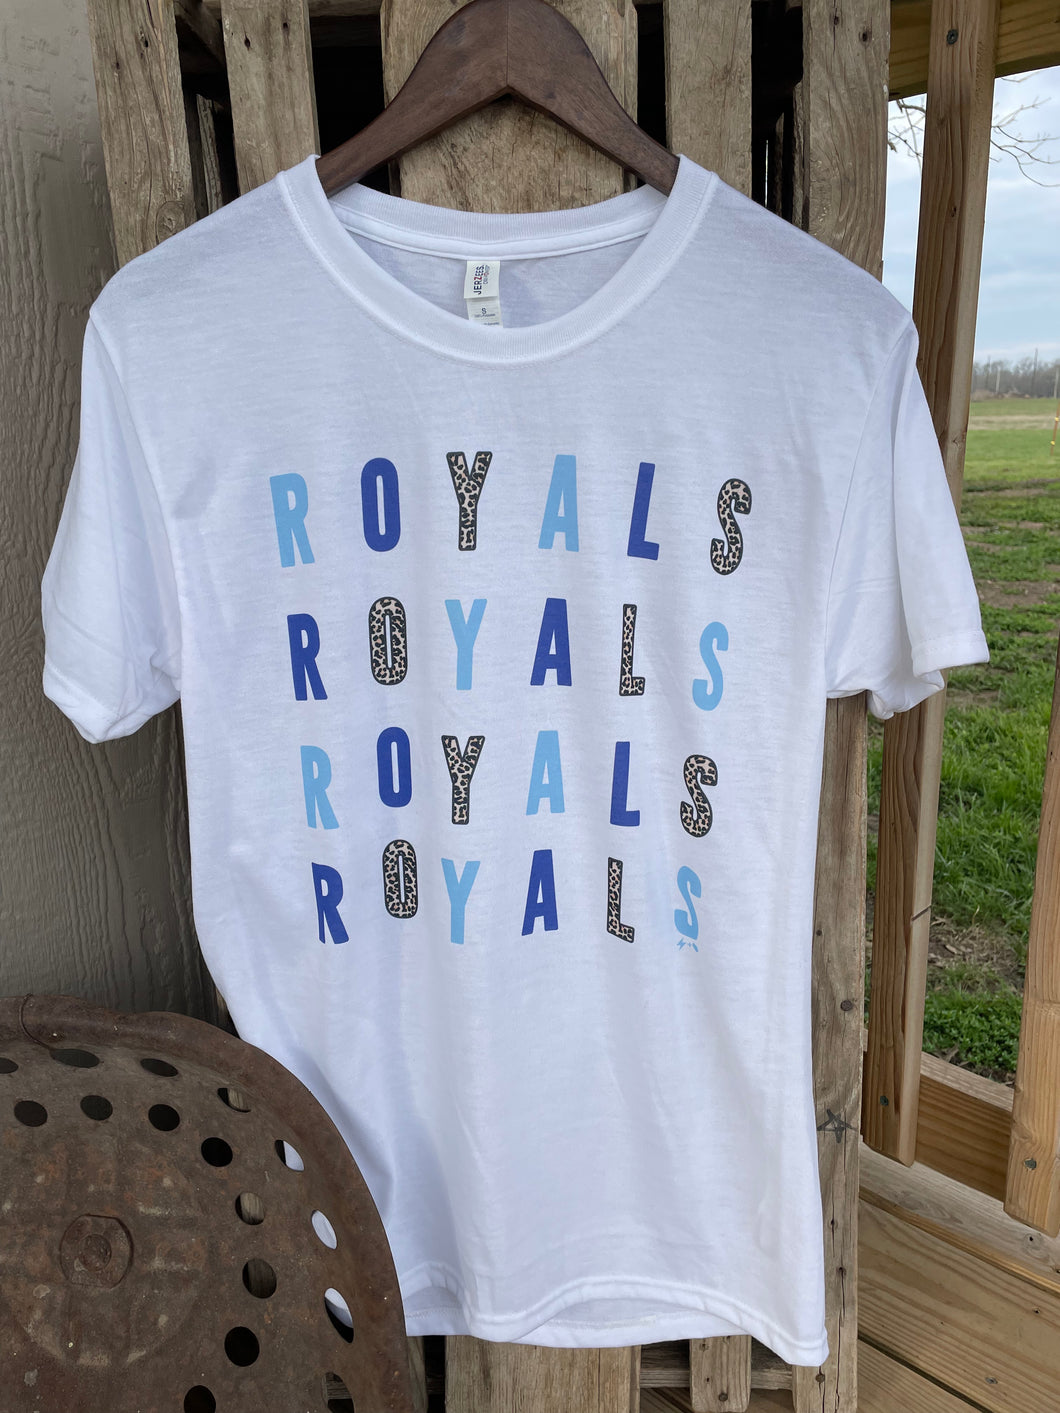 Royals Royals Royals Tee